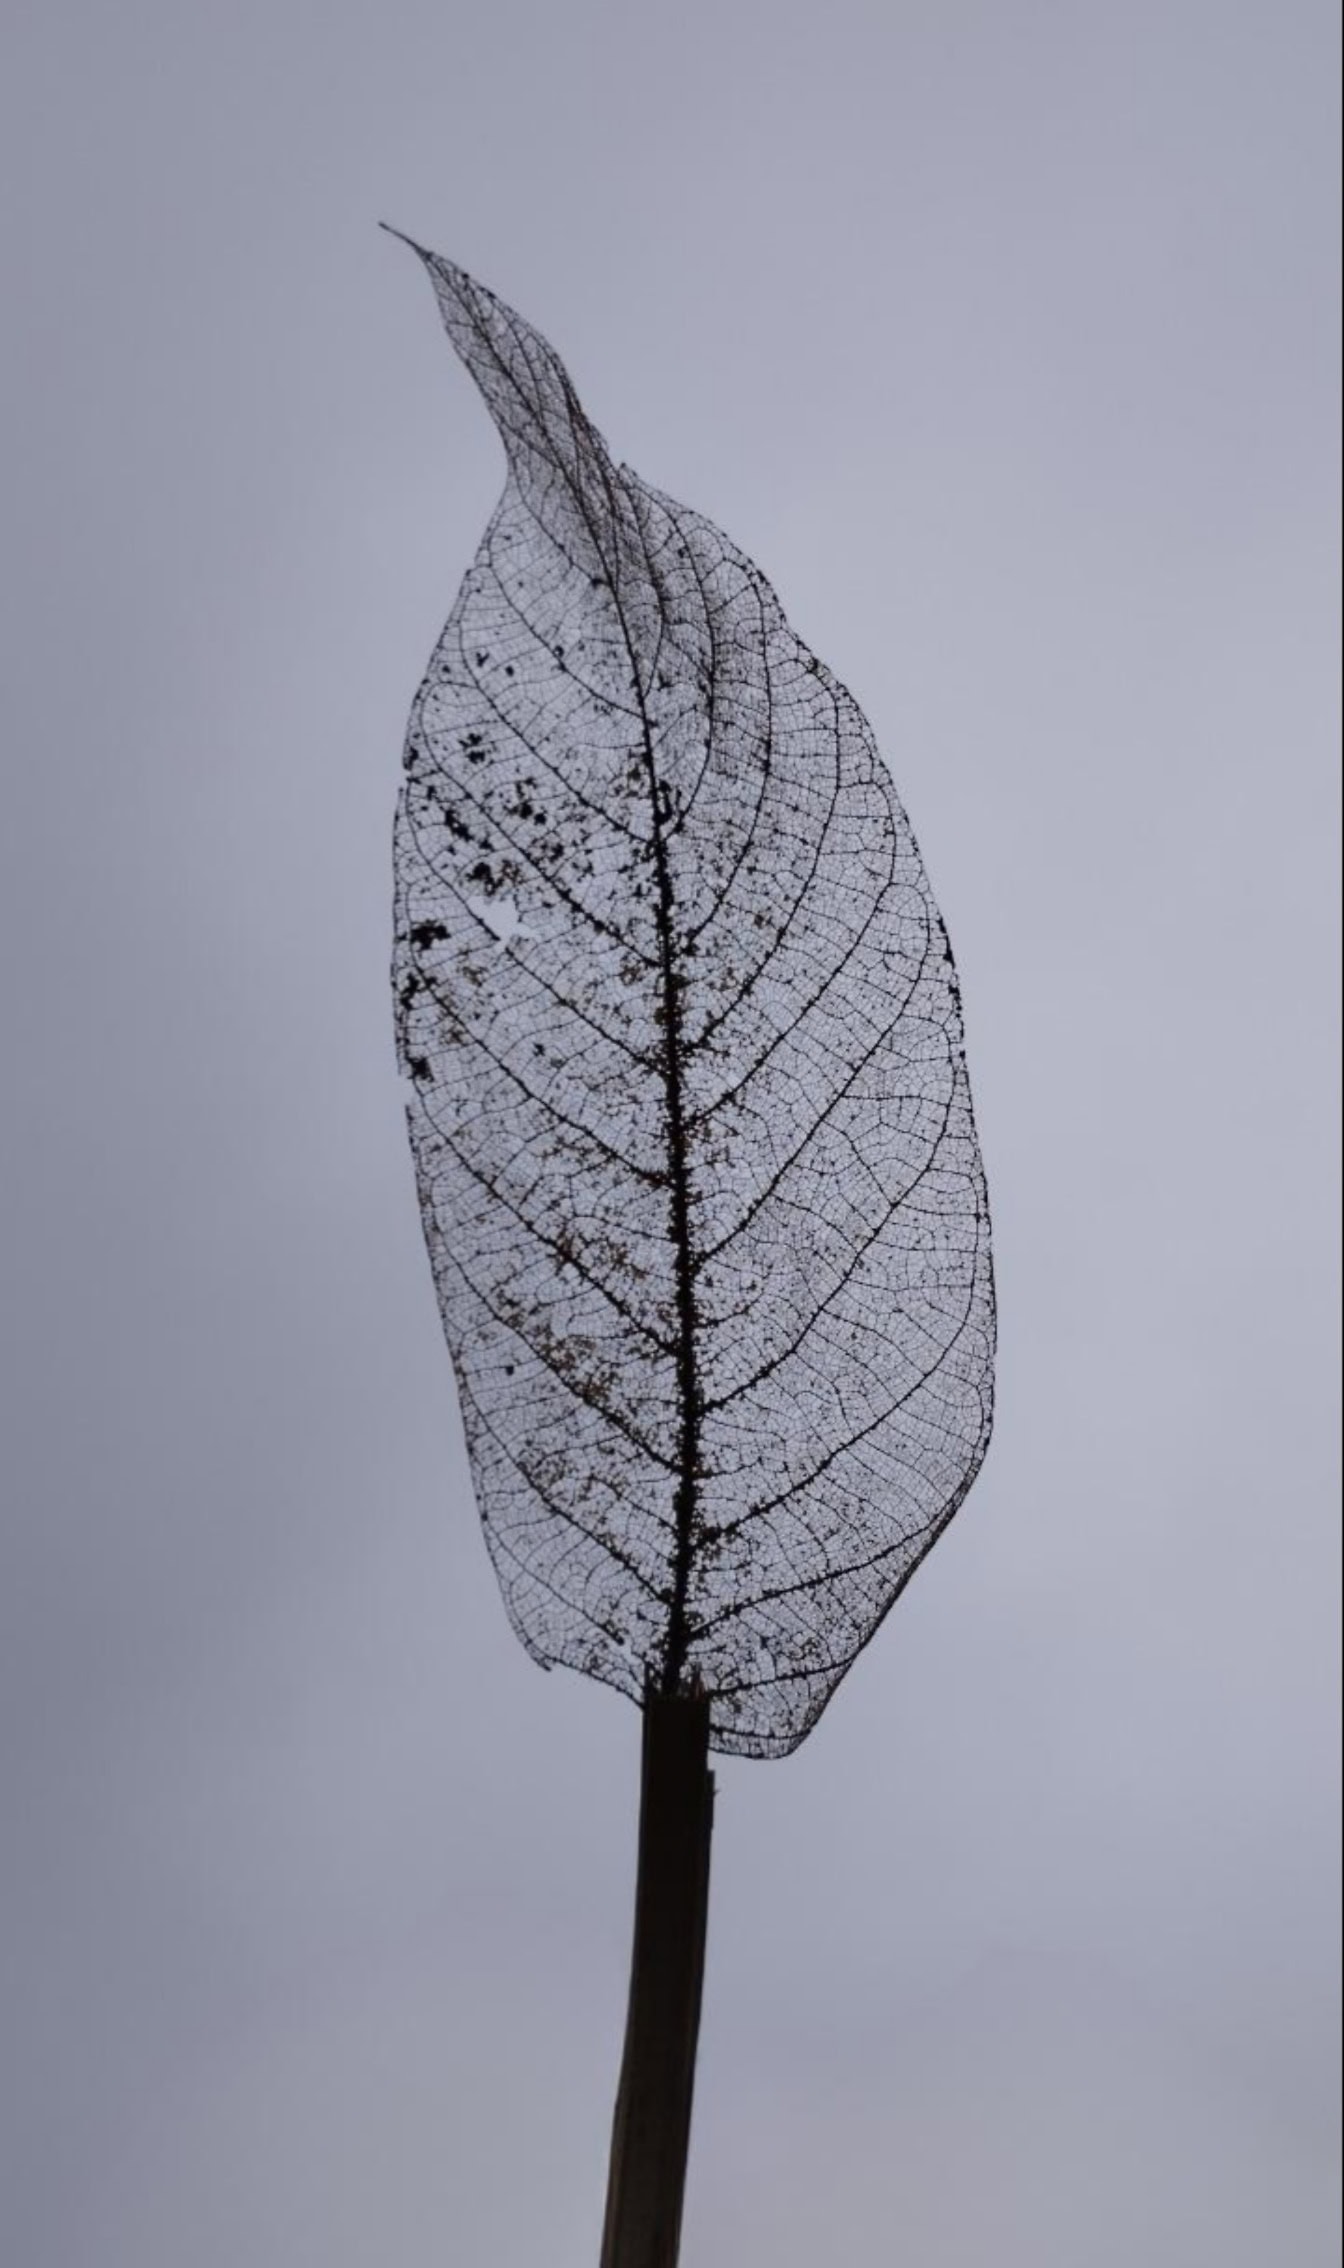 Genomskinligt skelett av bladnerver, svartvitt närbildfoto av ett sönderfallande blad